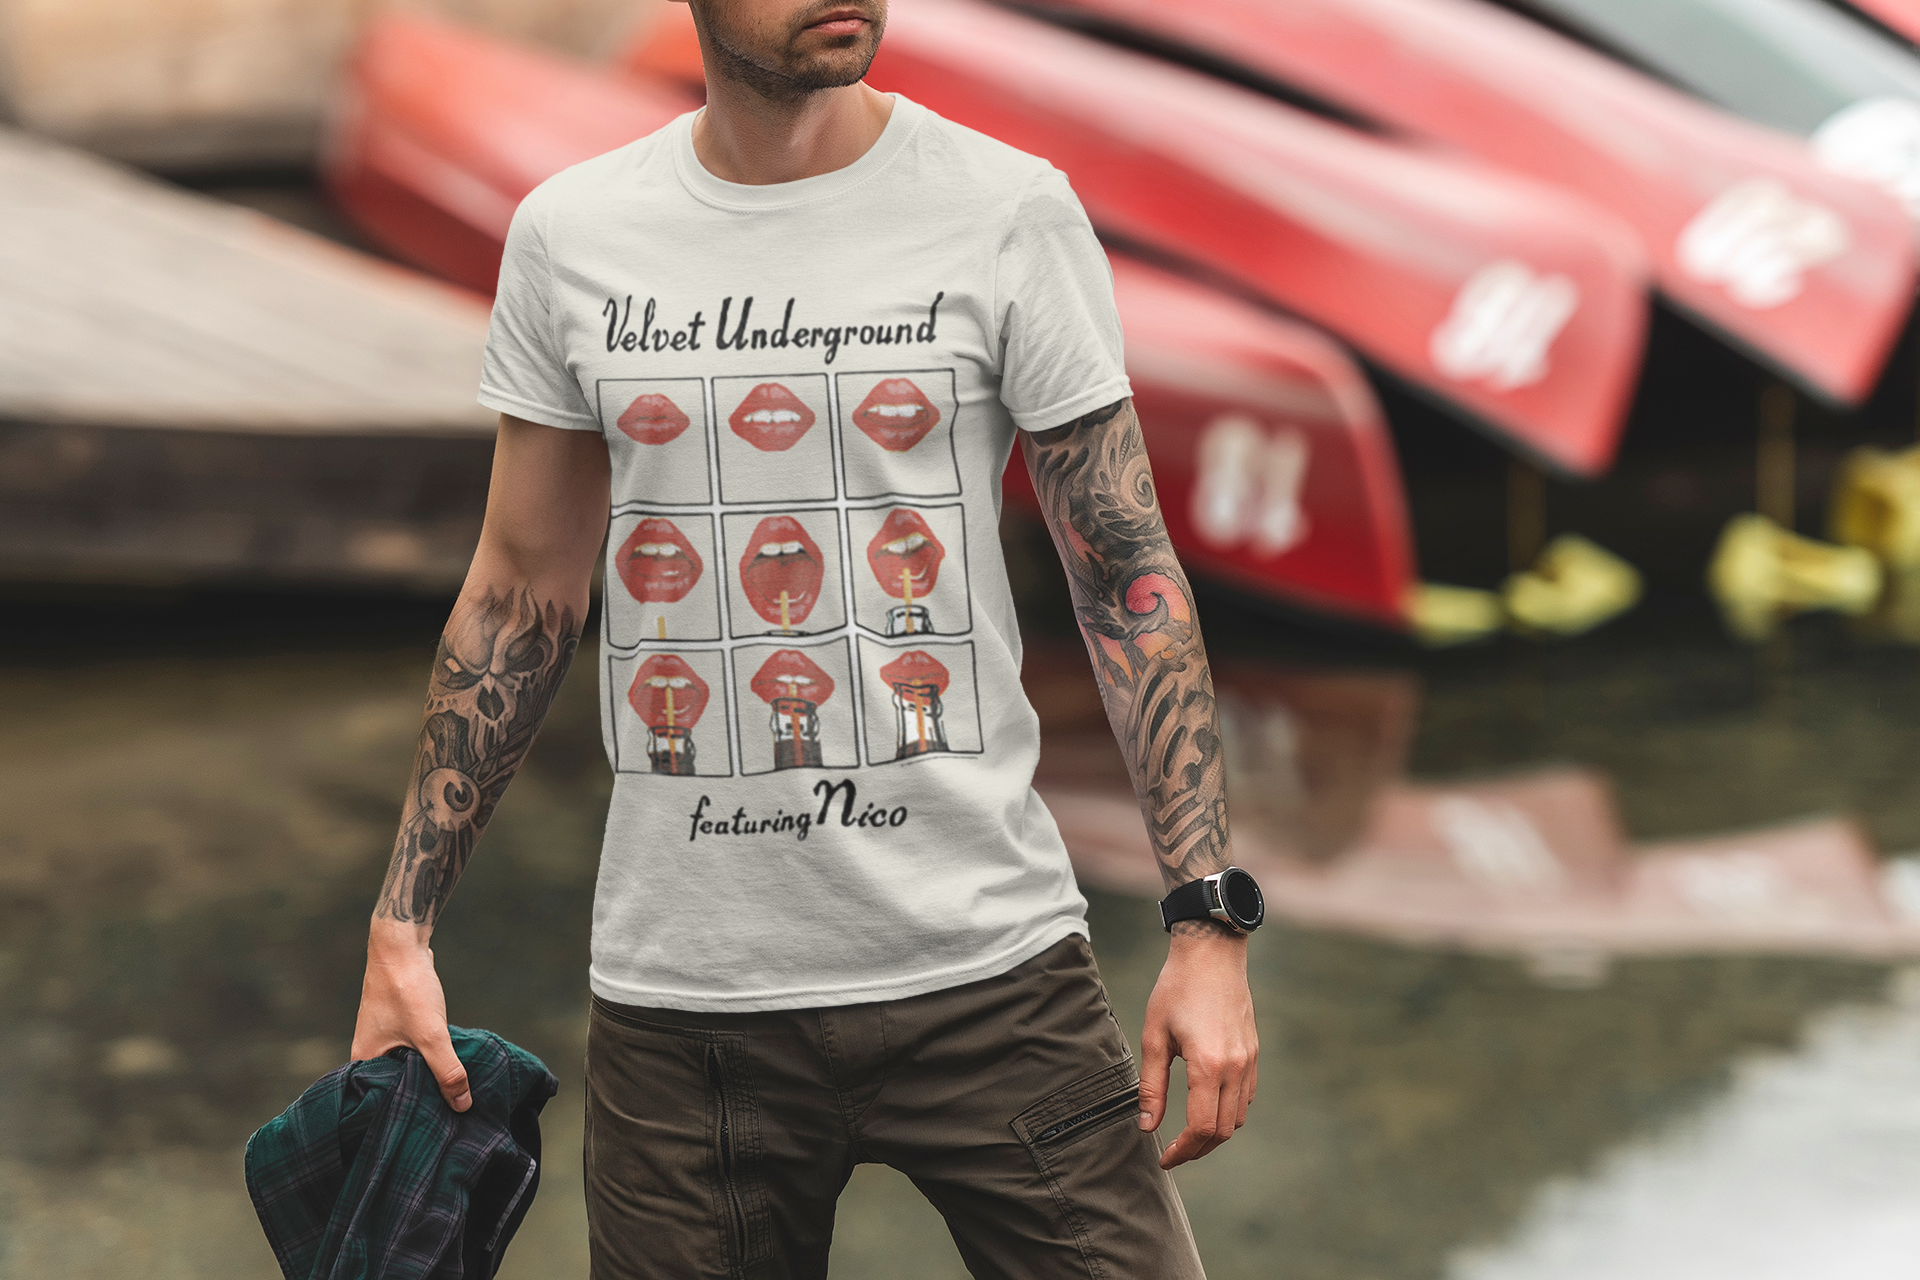 Velvet Underground vintage t-shirt design for men